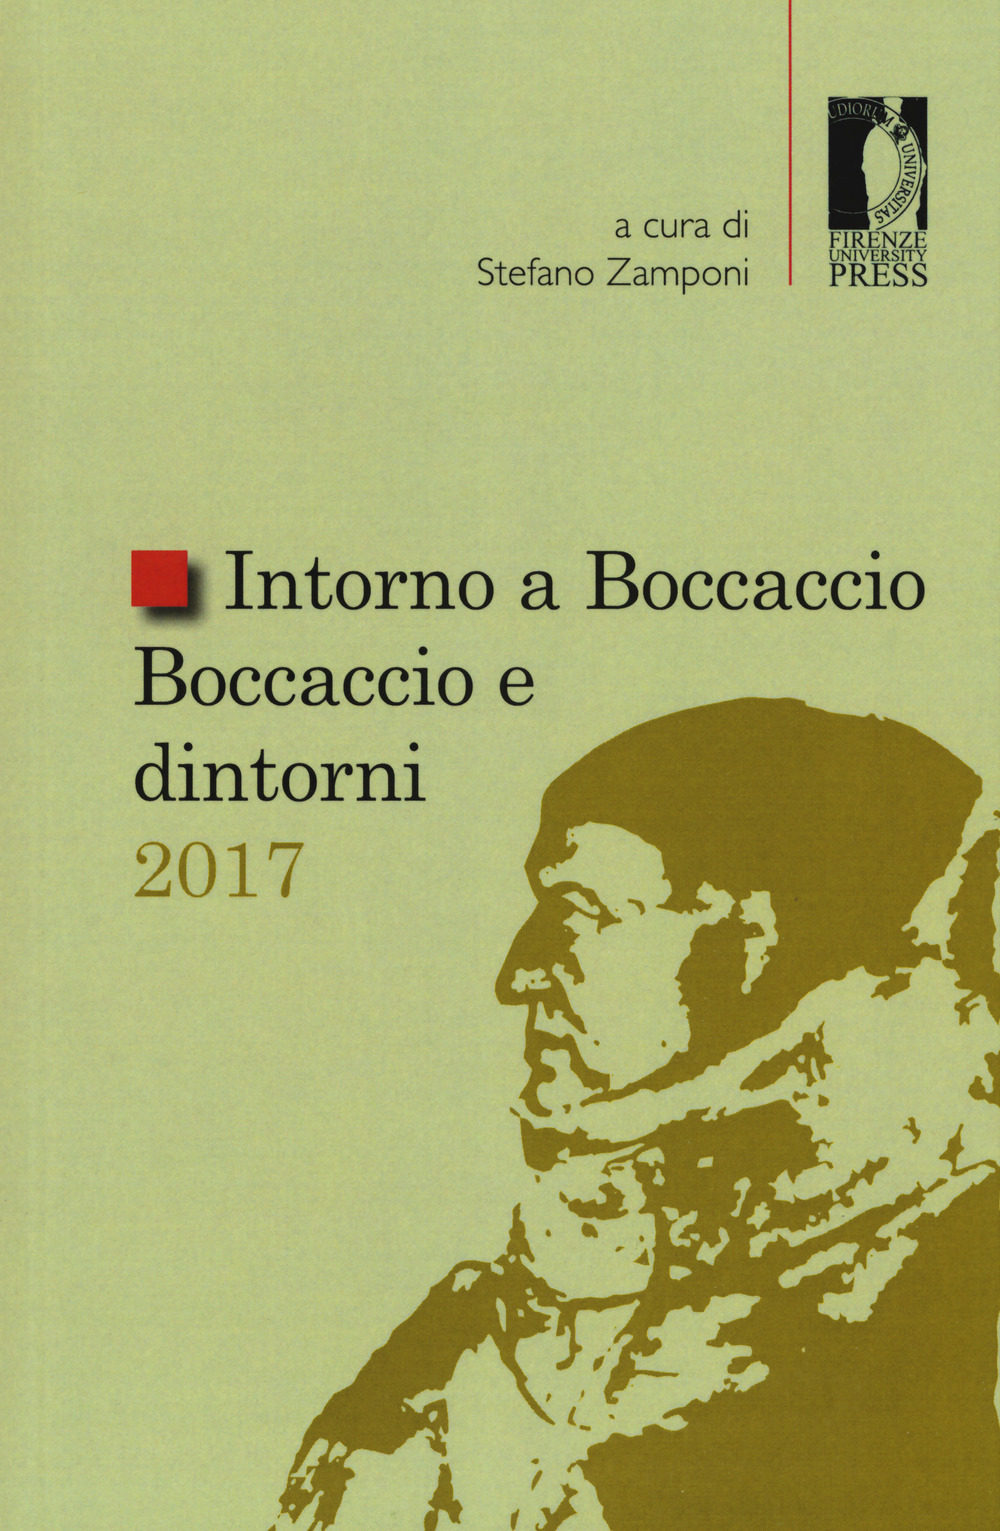 Intorno a Boccaccio/Boccaccio e dintorni 2017